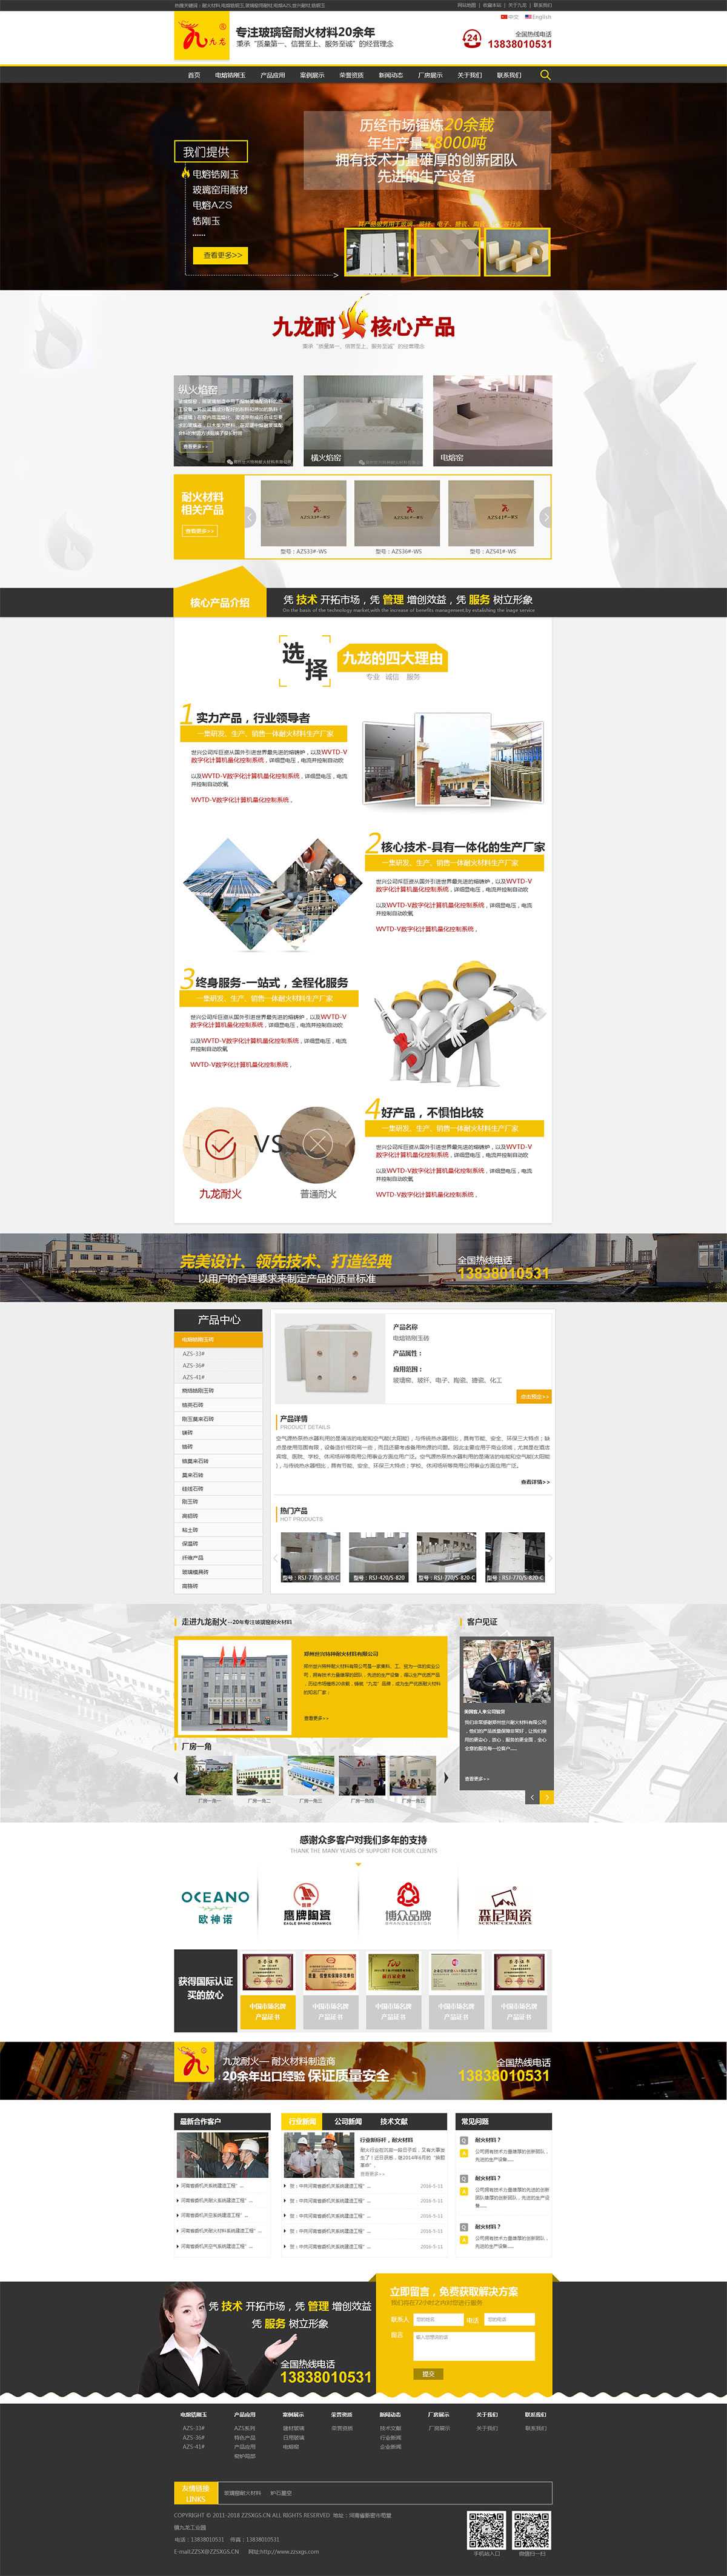 郑州九龙耐火材料营销型网站设计制作